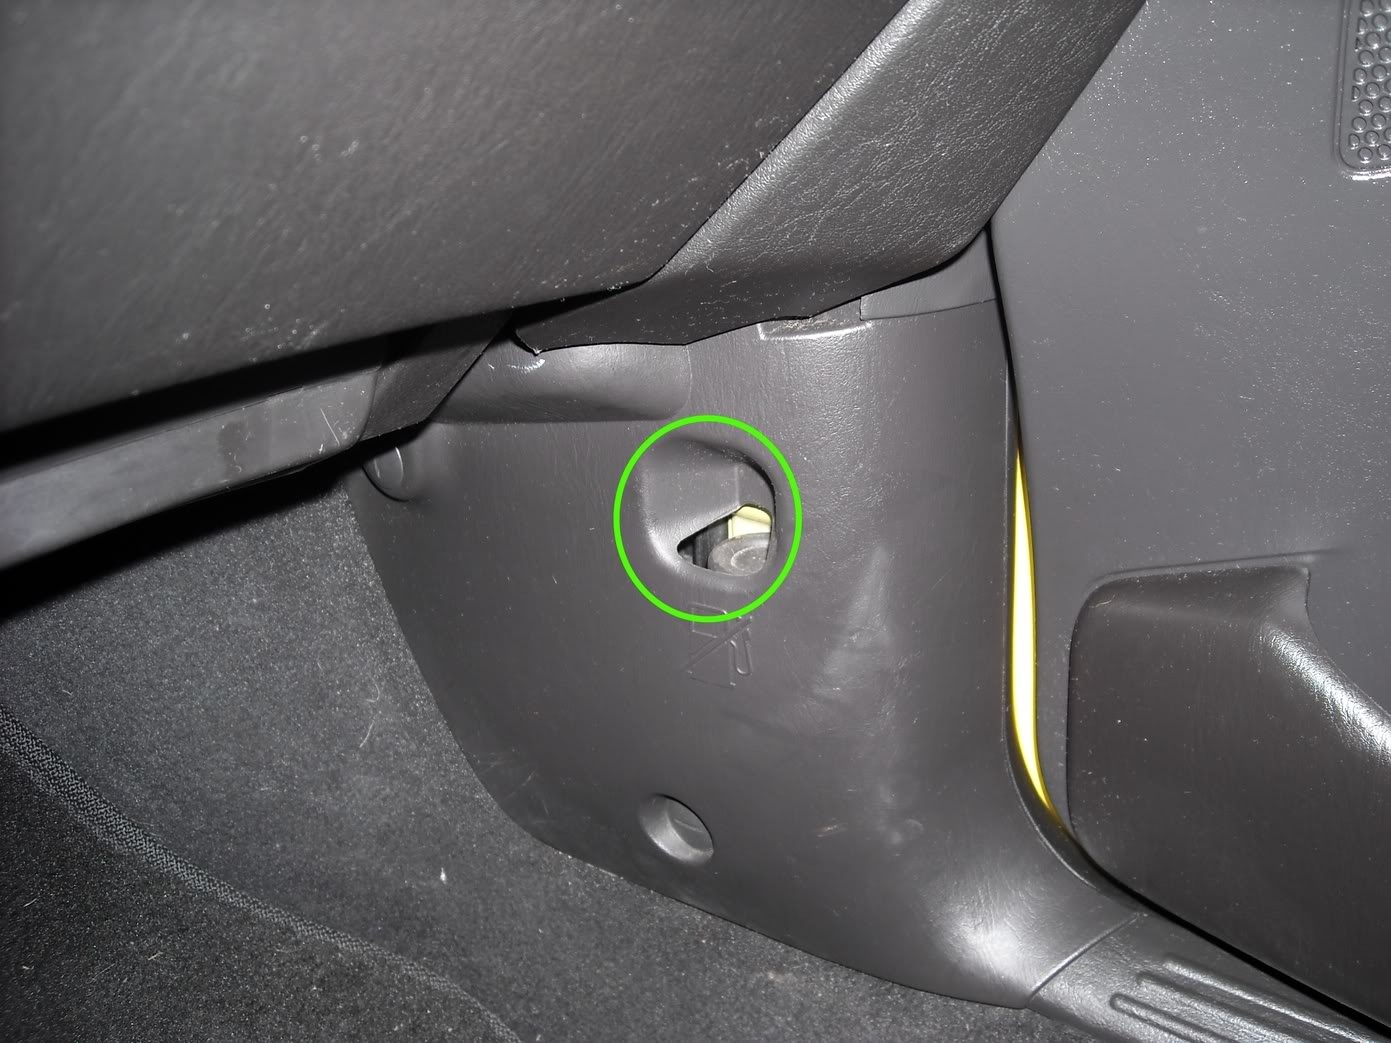 Выключатель топливного насоса: об этой кнопке в машине не знают большинство водителей бензонасоса, может, двигатель, чтобы, кнопки, топливного, насоса, выключатель, кнопка, машине, датчик, случае, отключения, кнопку, подачи, топлива, вашей, автомобиля, датчика, который